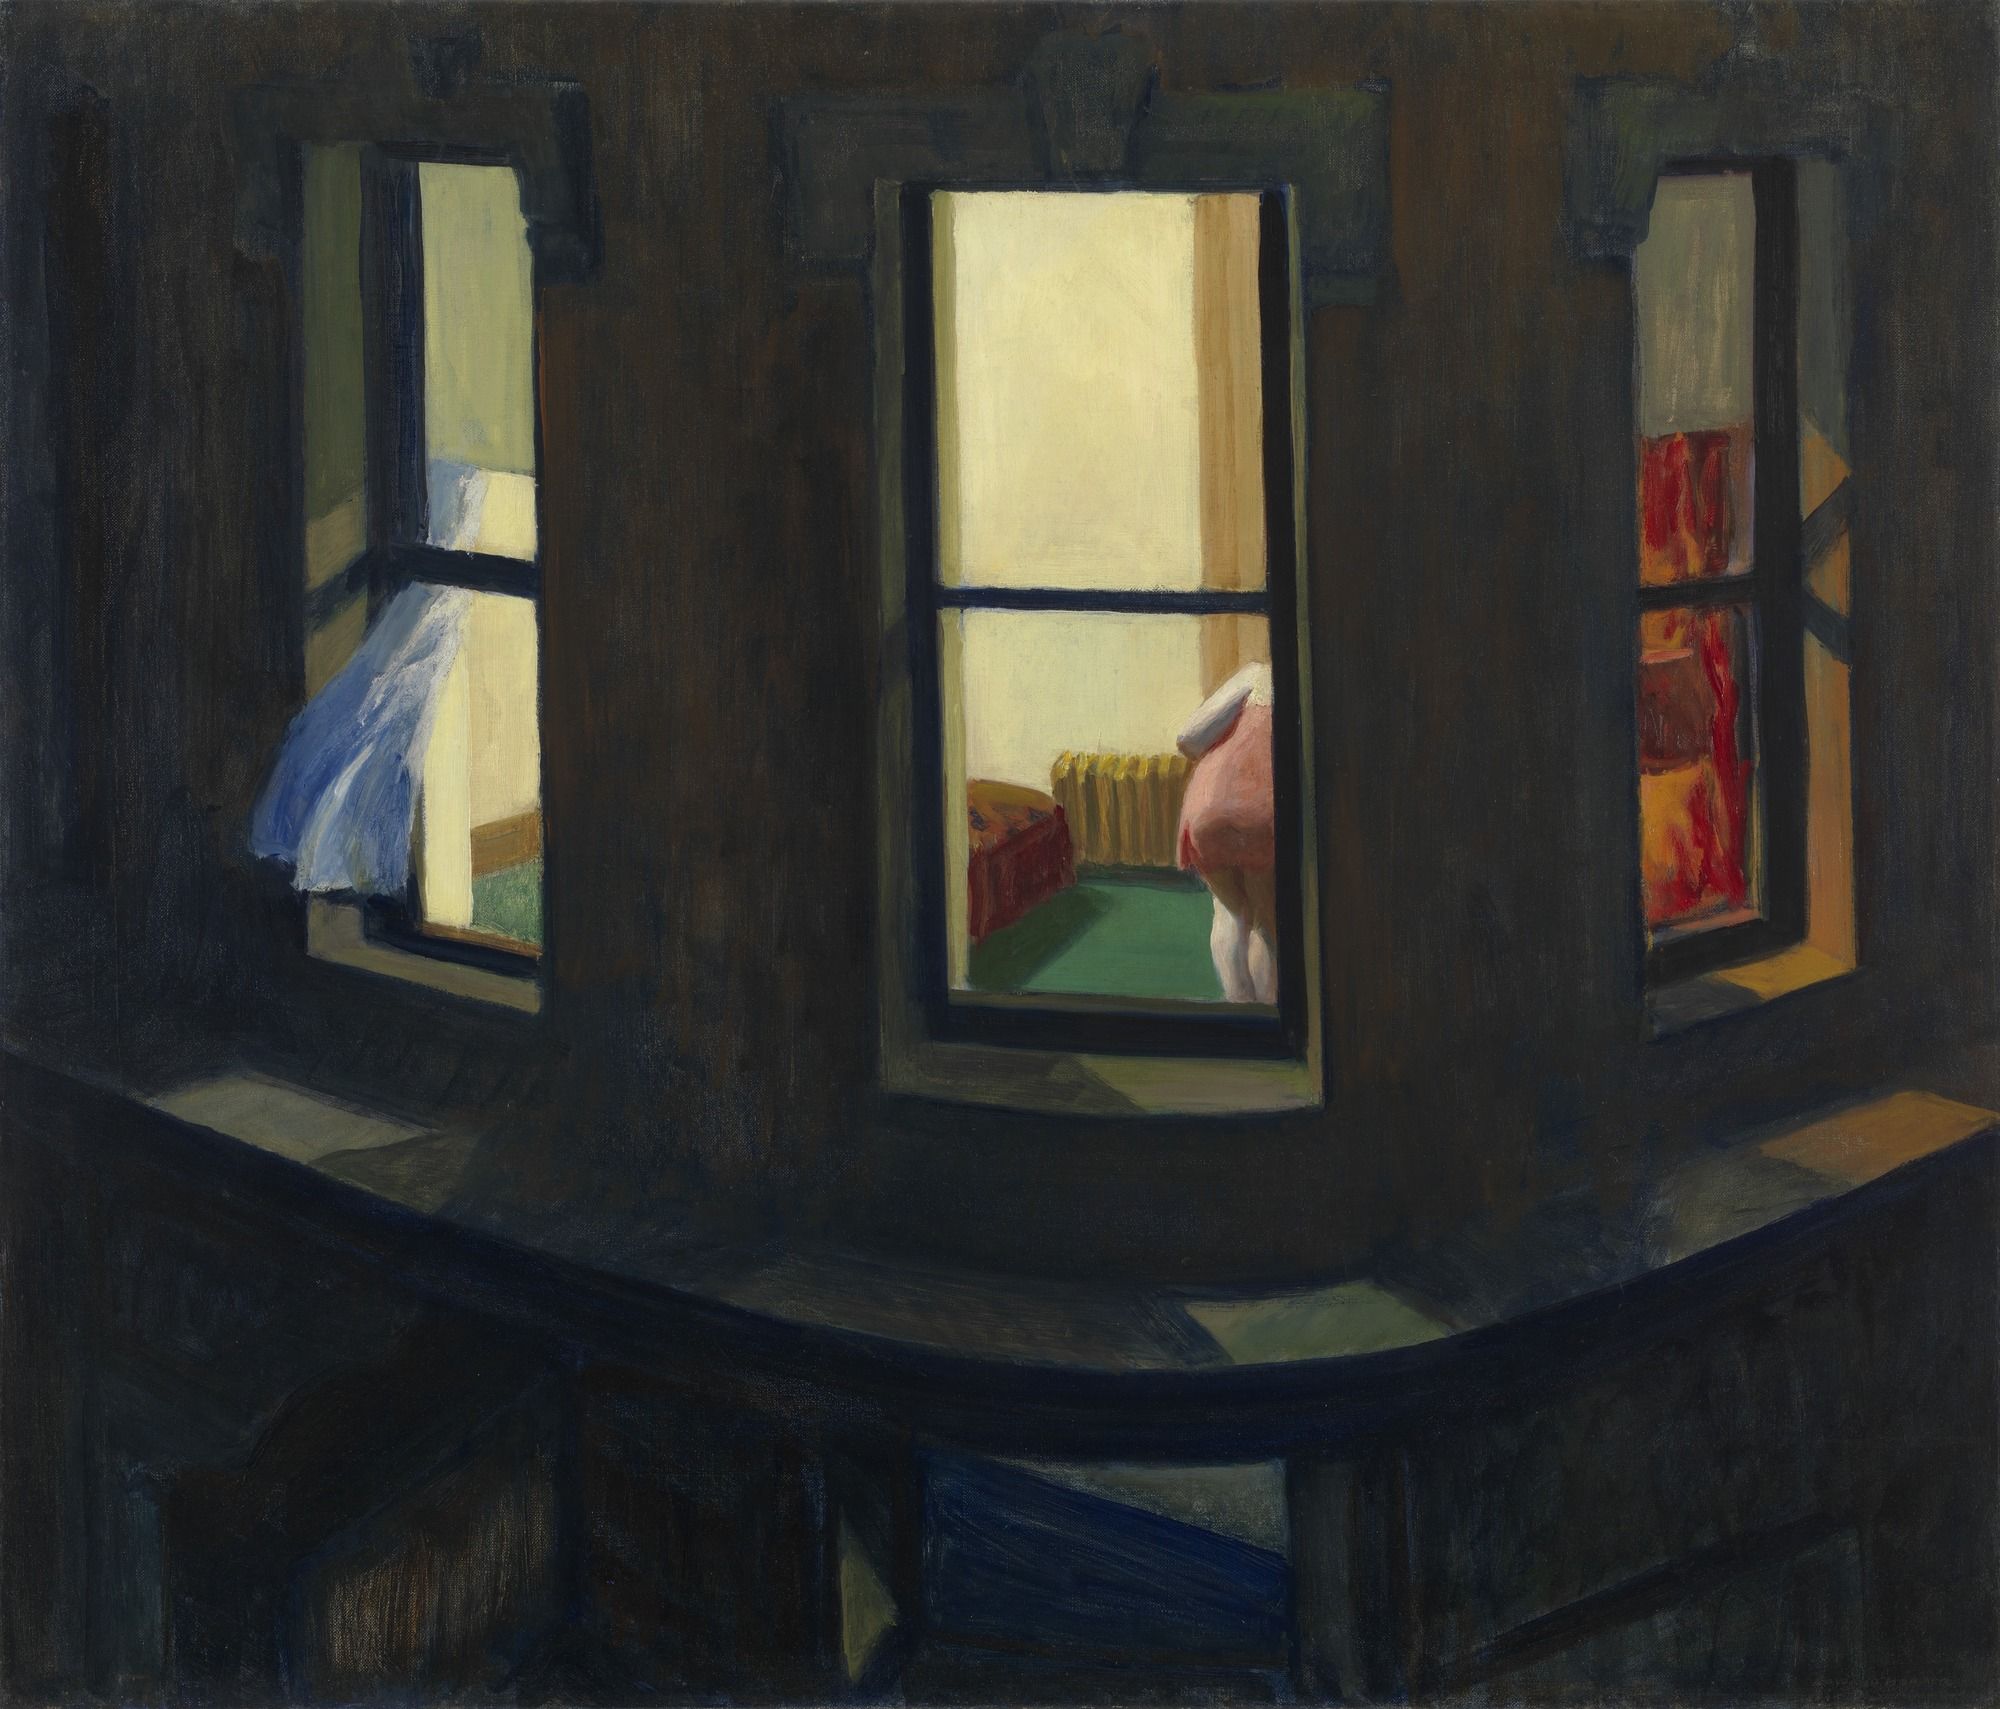 پنجره ی شب by Edward Hopper - 1928 - 74 x 86 سانتی متر 